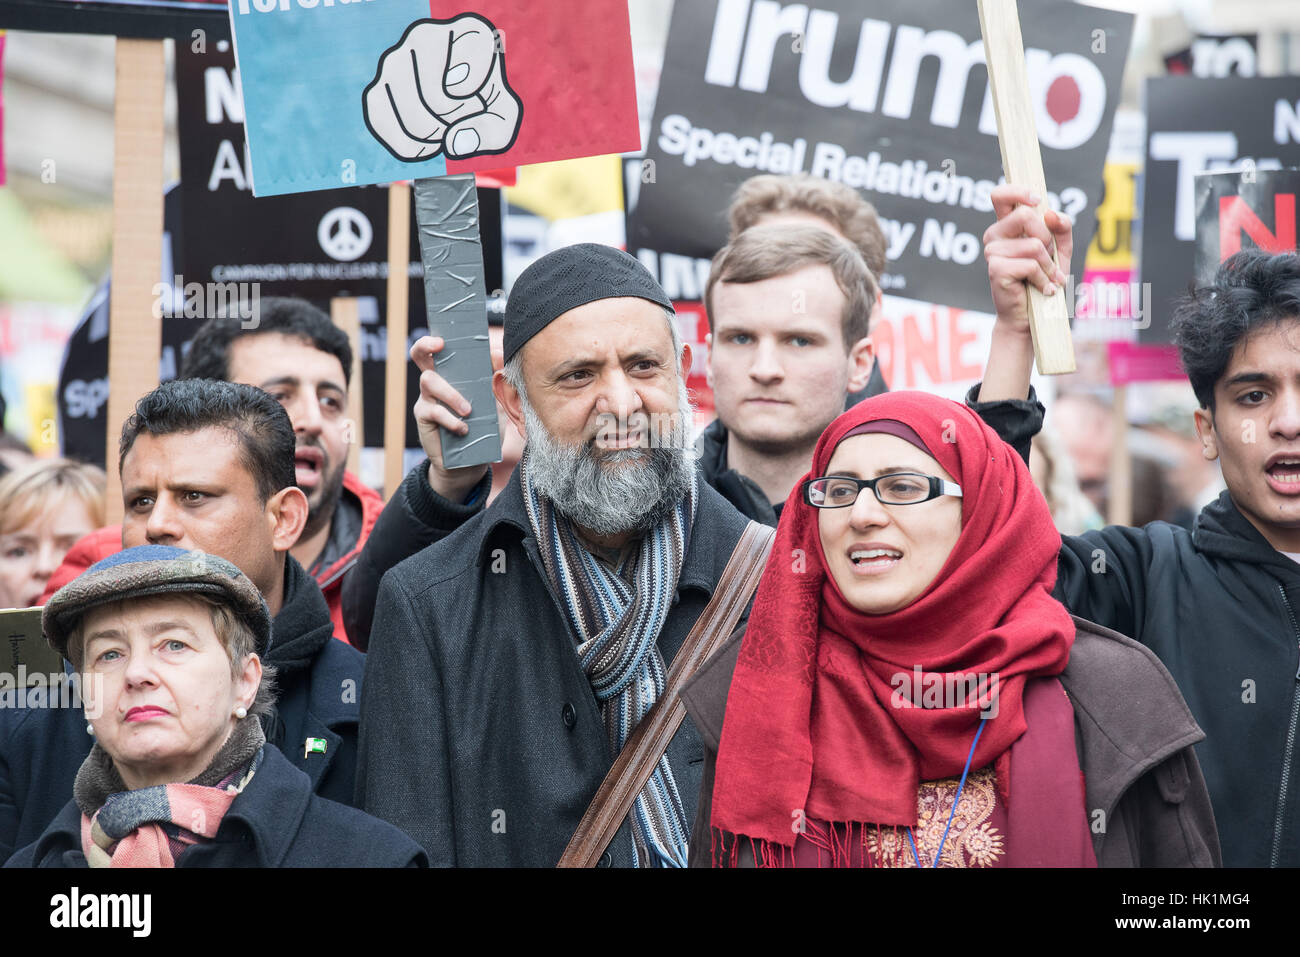 Londres, Royaume-Uni. 4 Février, 2017. heaed du mars, à l'Atout anti-manifestation à Londres Crédit : Ian Davidson/Alamy Live News Banque D'Images